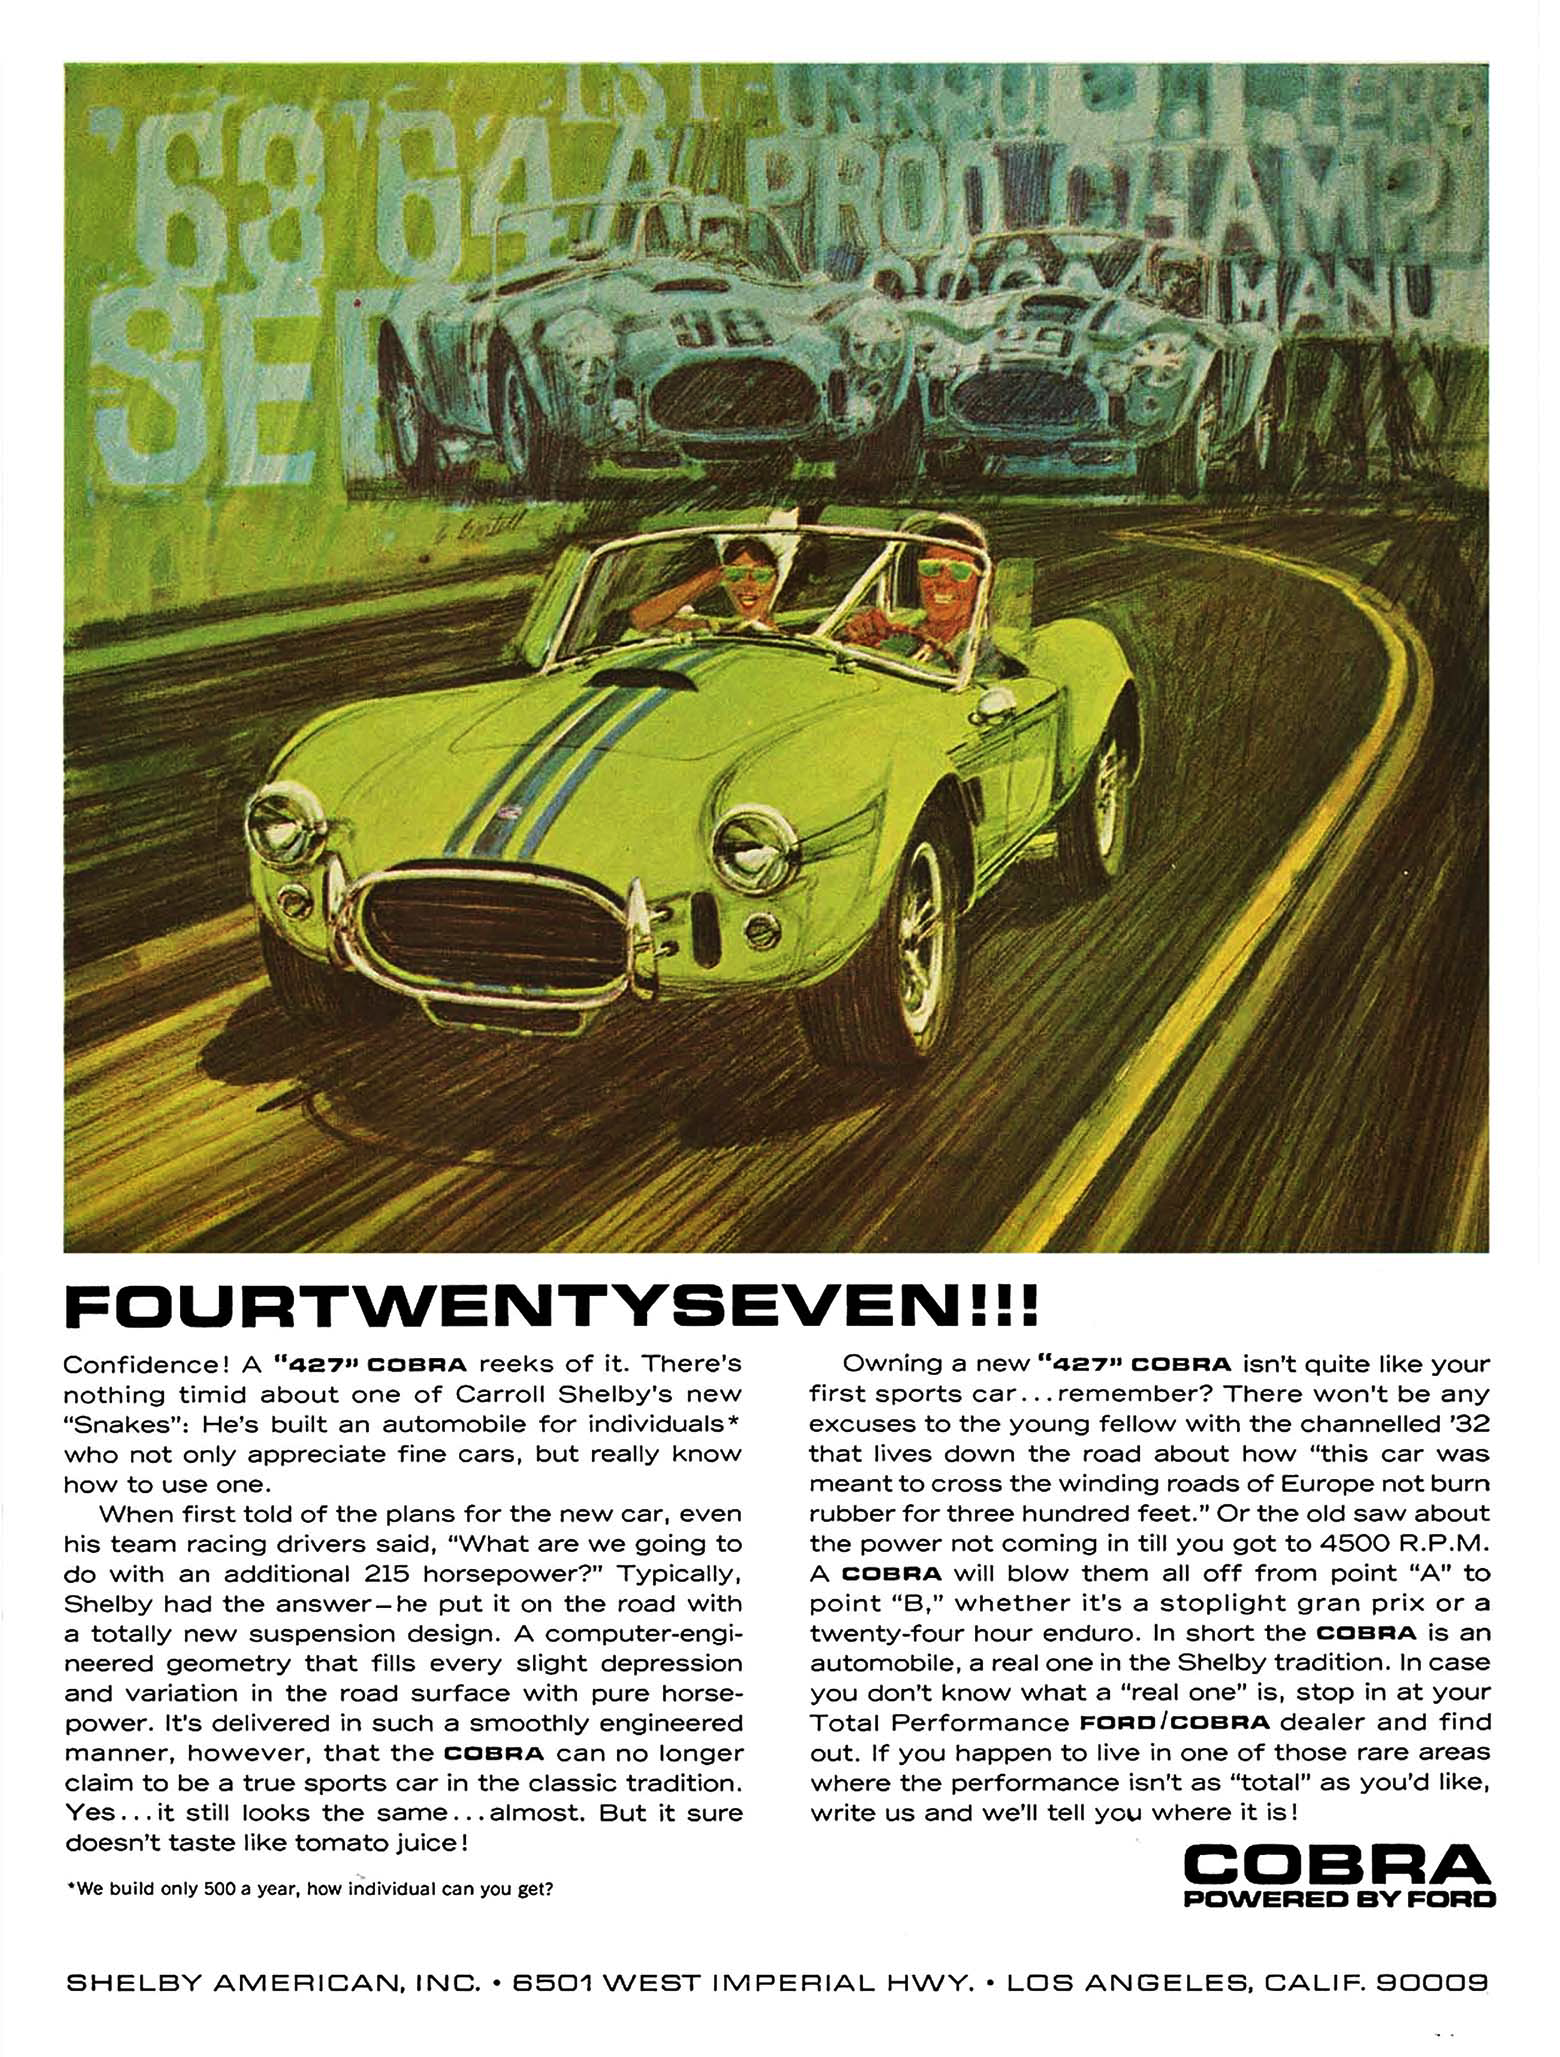 1965 Shelby Ad Cobra "FourTwentySeven"